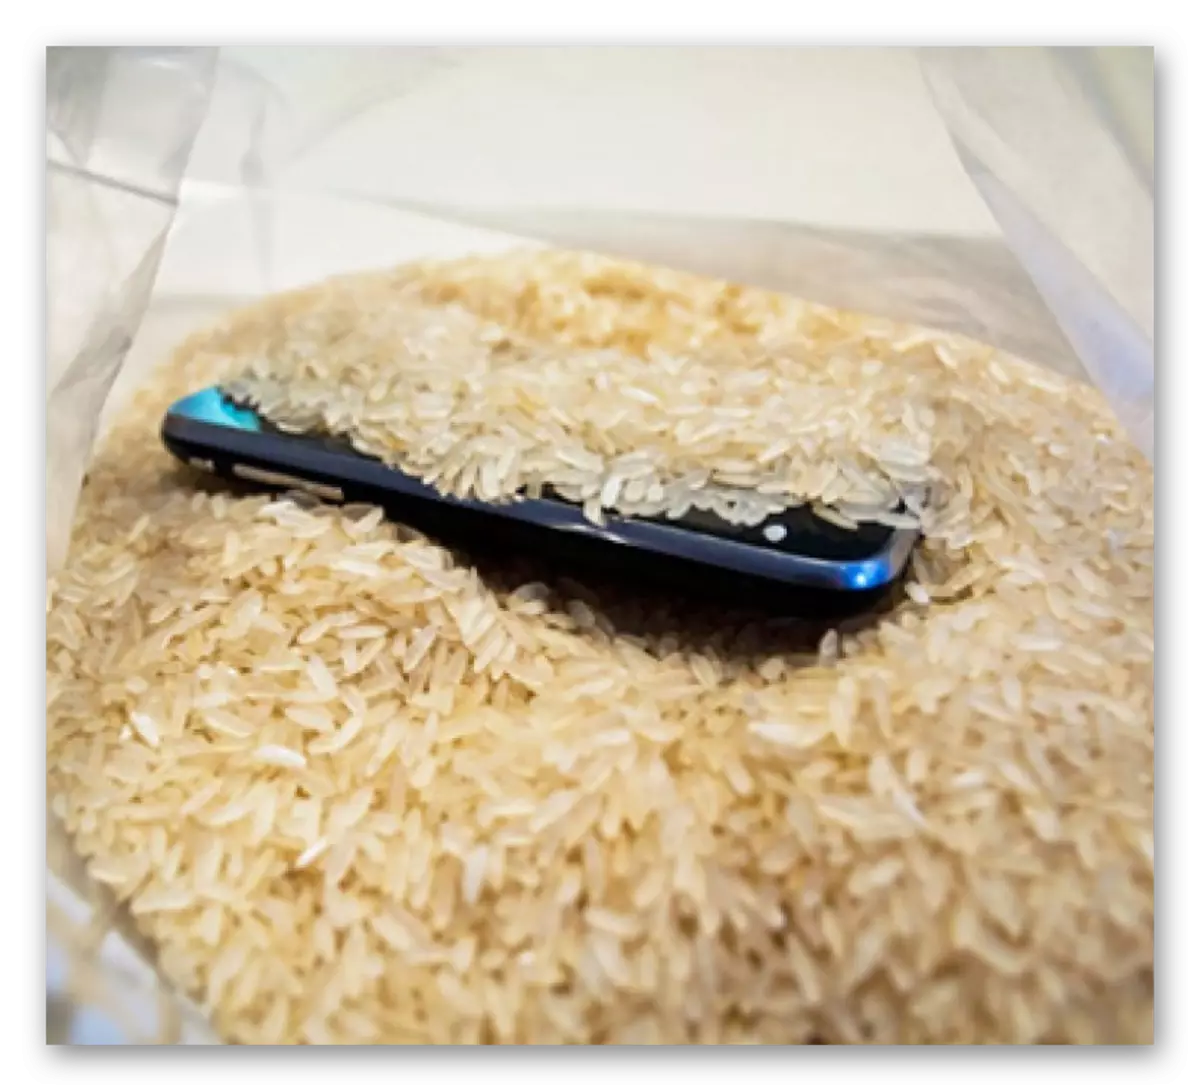 Teléfono en capacidad con arroz.